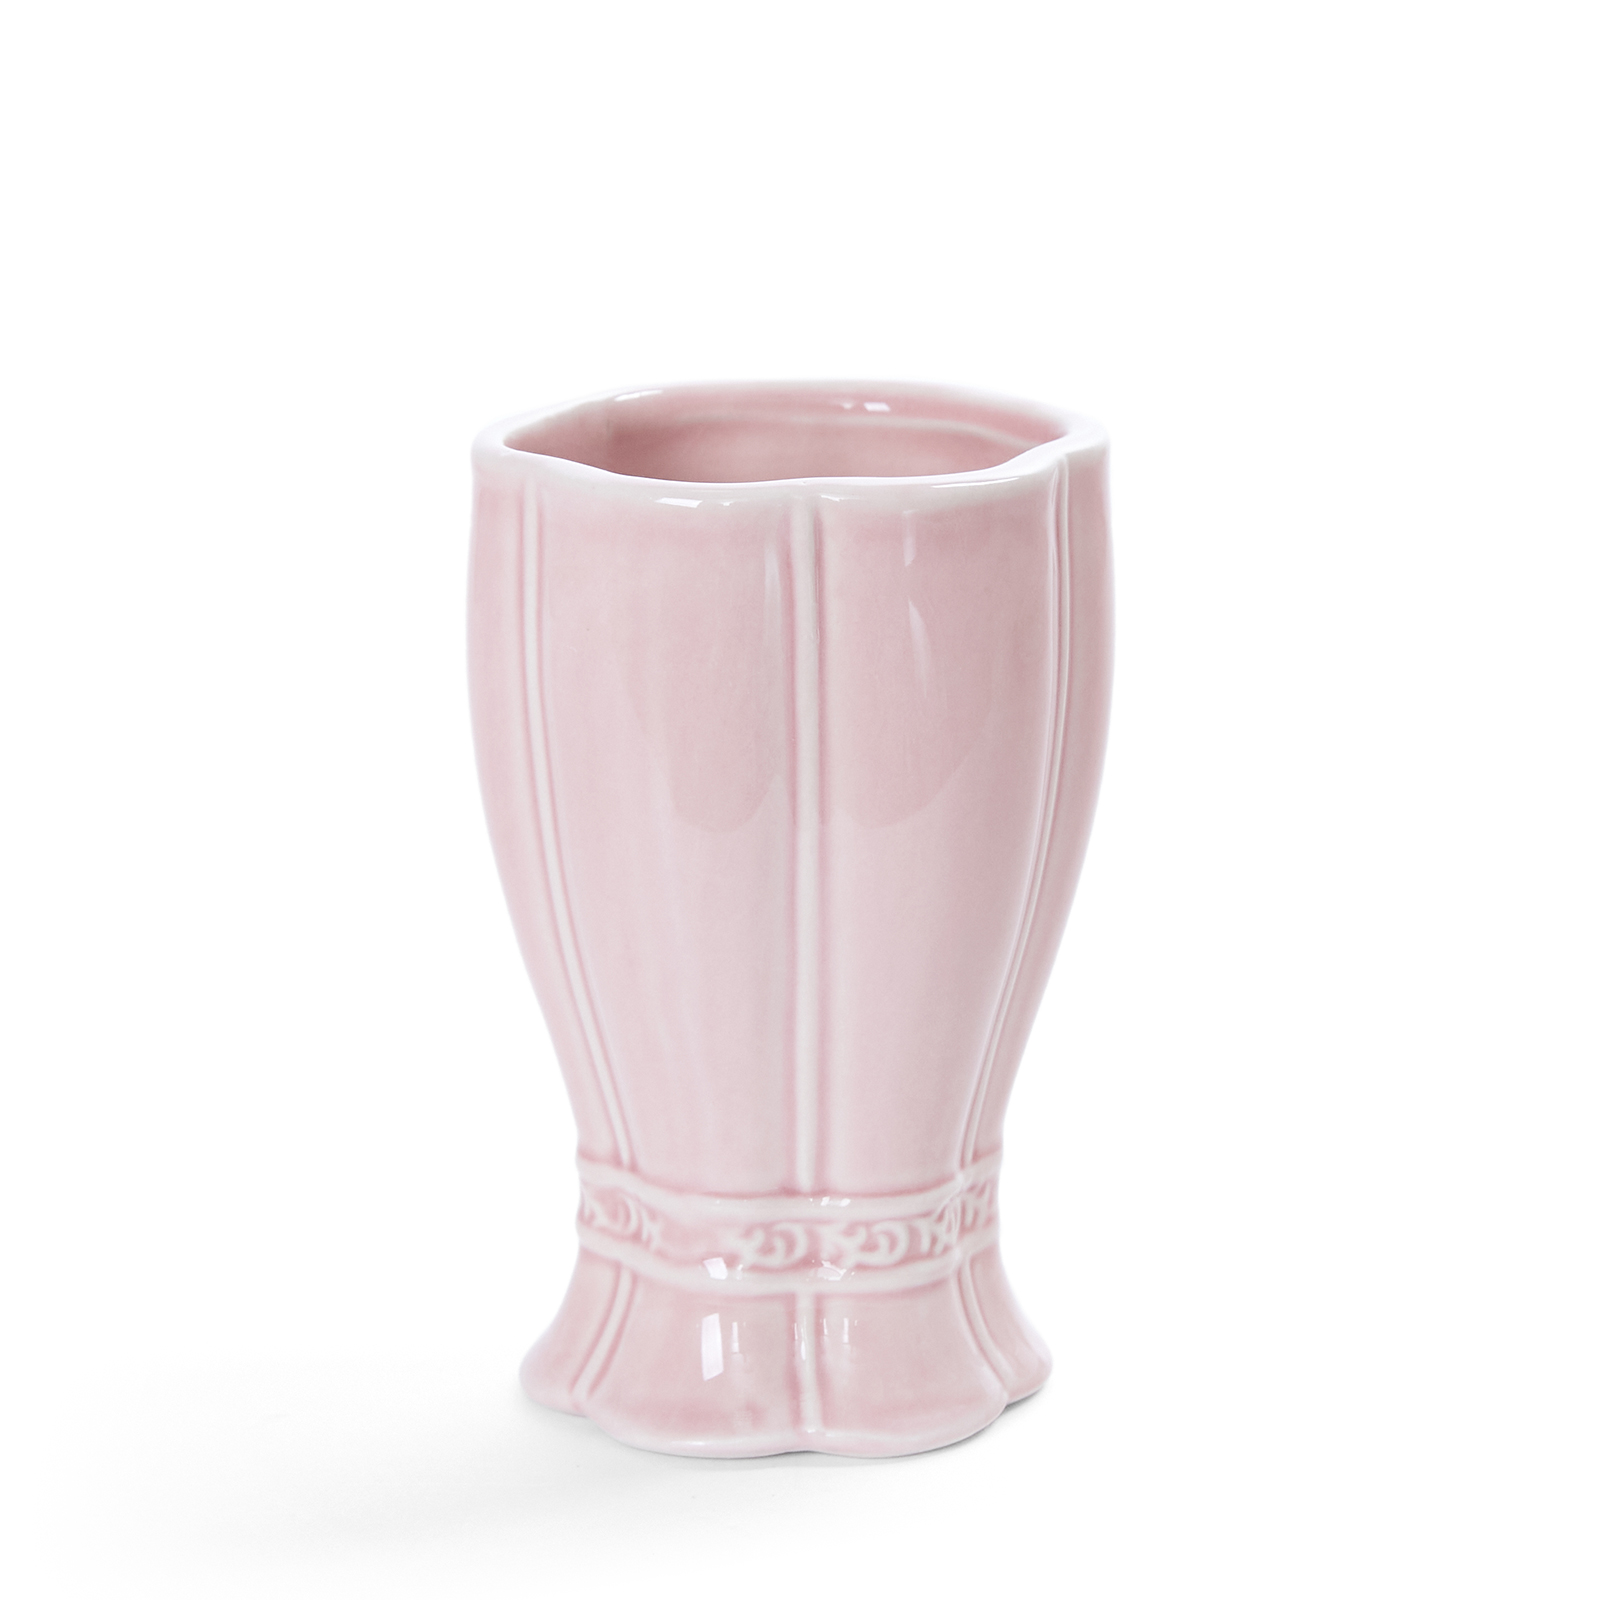 Стакан для зубных щеток Ostellato, розовый сумка клатч на клапане розовый